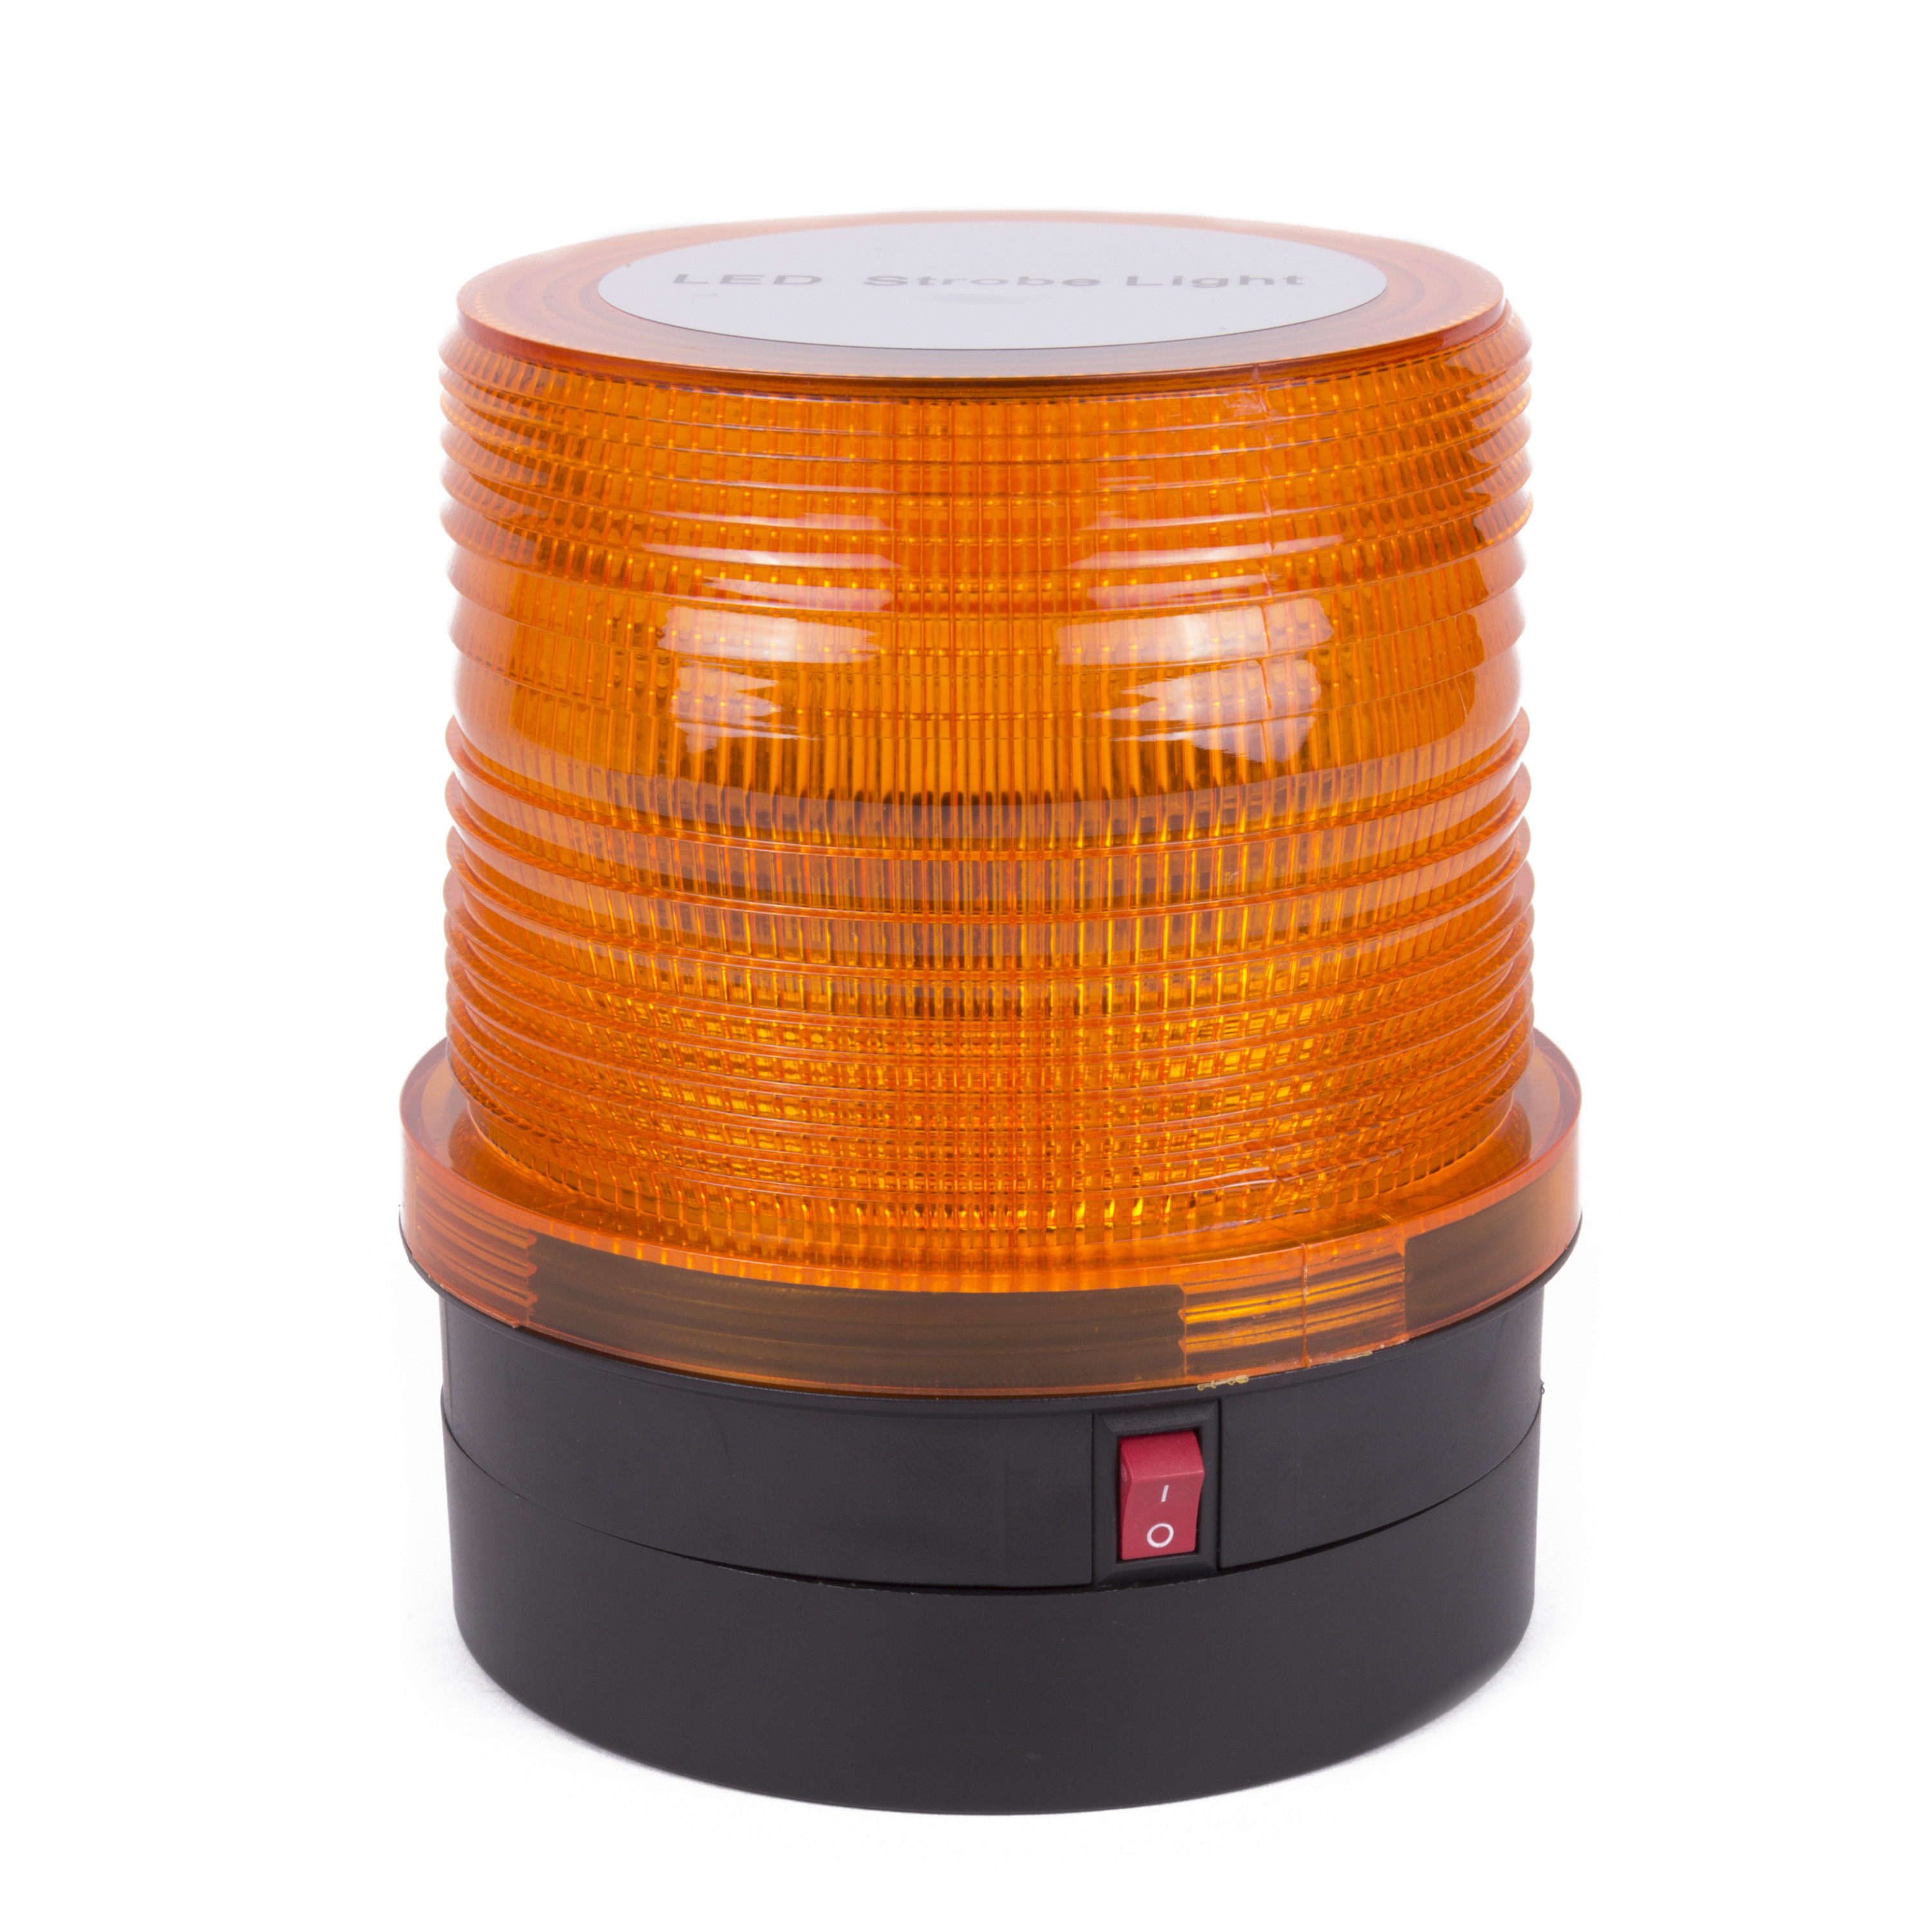 Zwaailamp oranje LED - strobe - waarschuwingslicht voor voertuig/auto - 12,3 x 9,5 x 10,8 cm